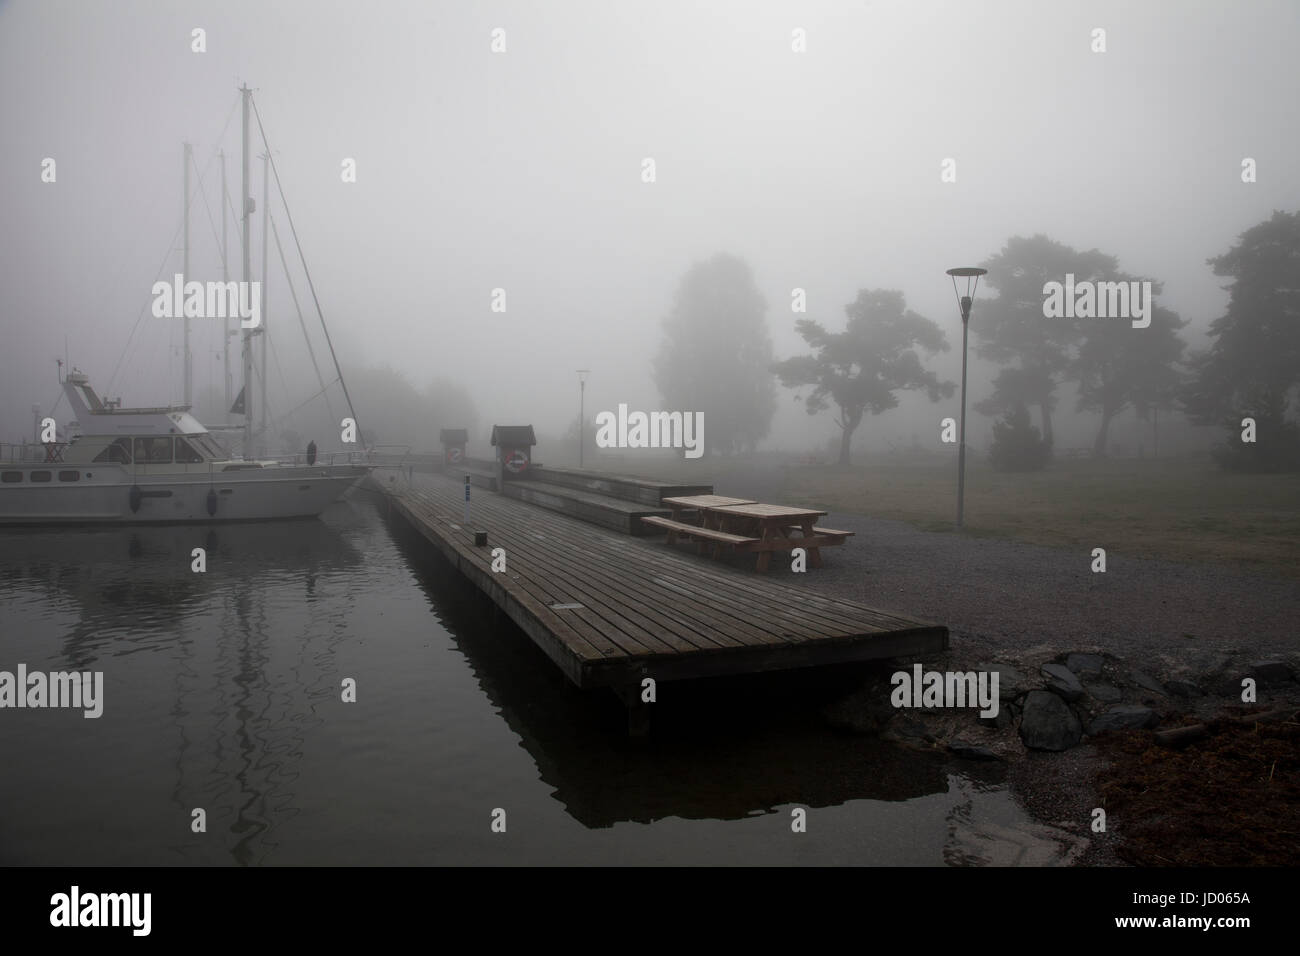 Uto harbour shrouded in mist, Uto, Stockholm County, Sweden. Stock Photo